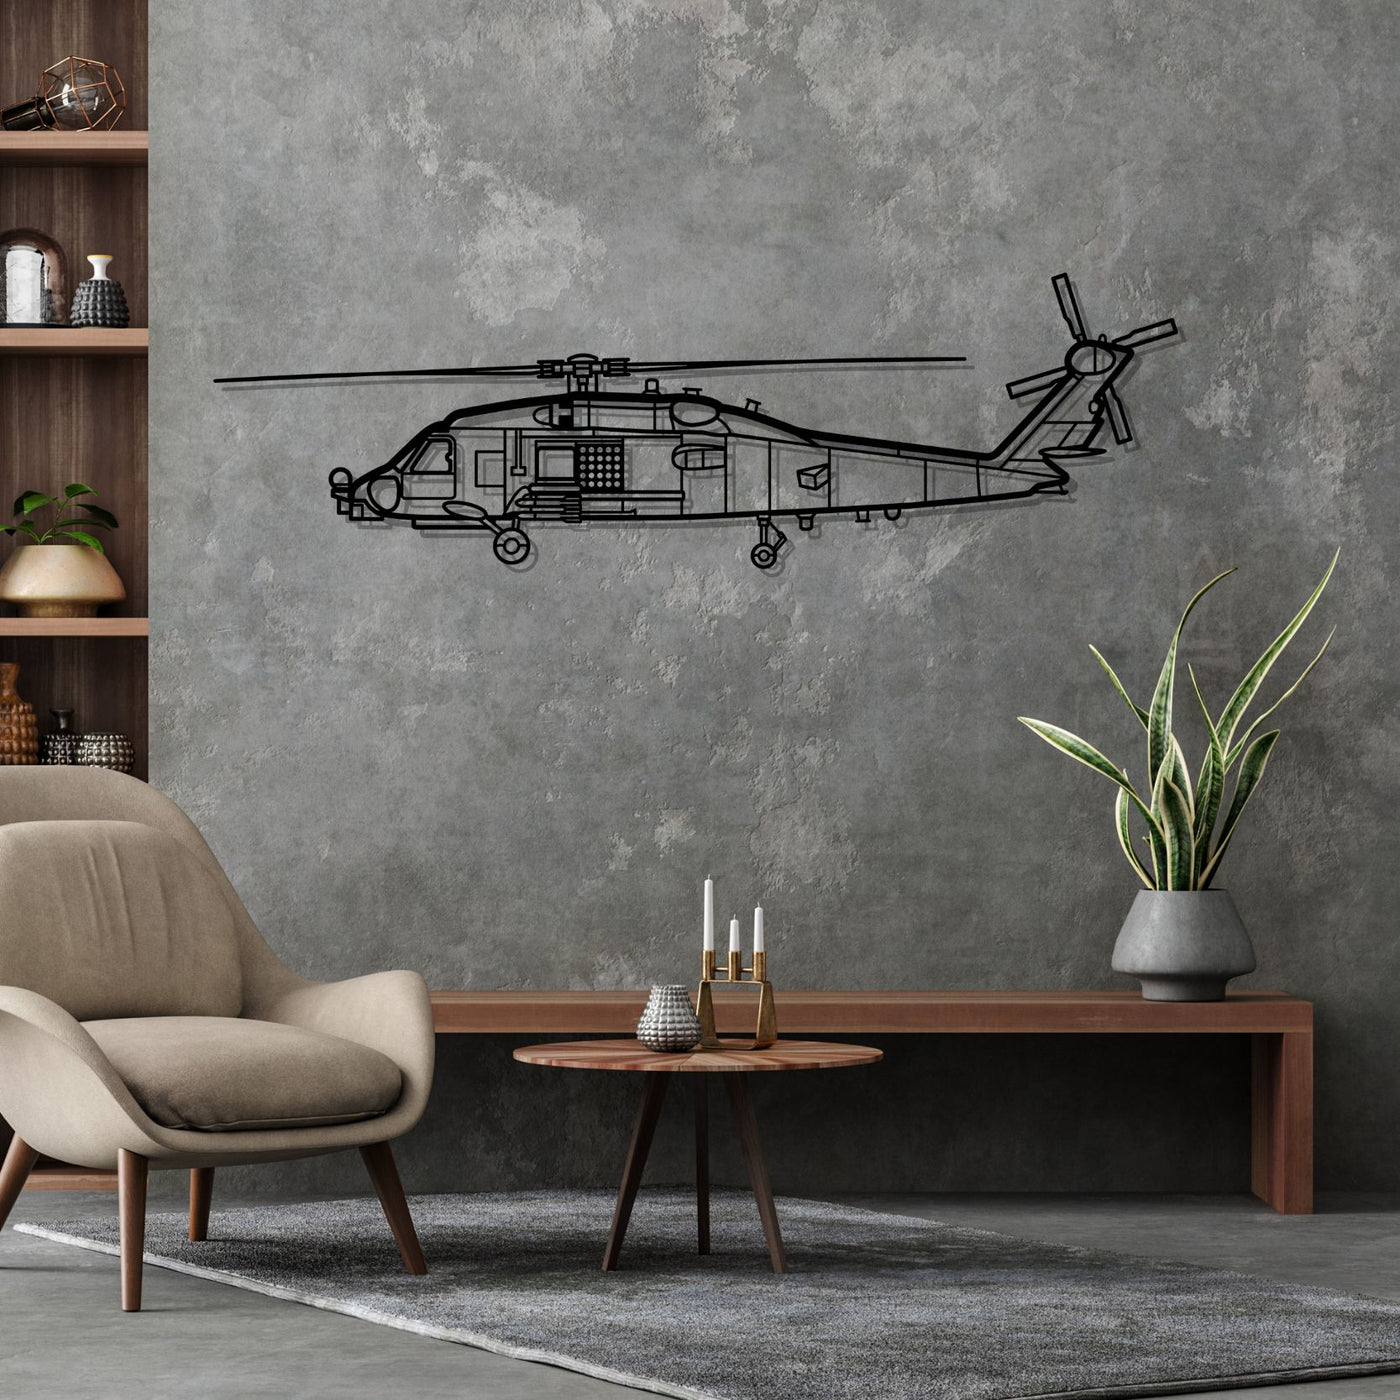 MH-60 Romeo Silhouette Metal Wall Art